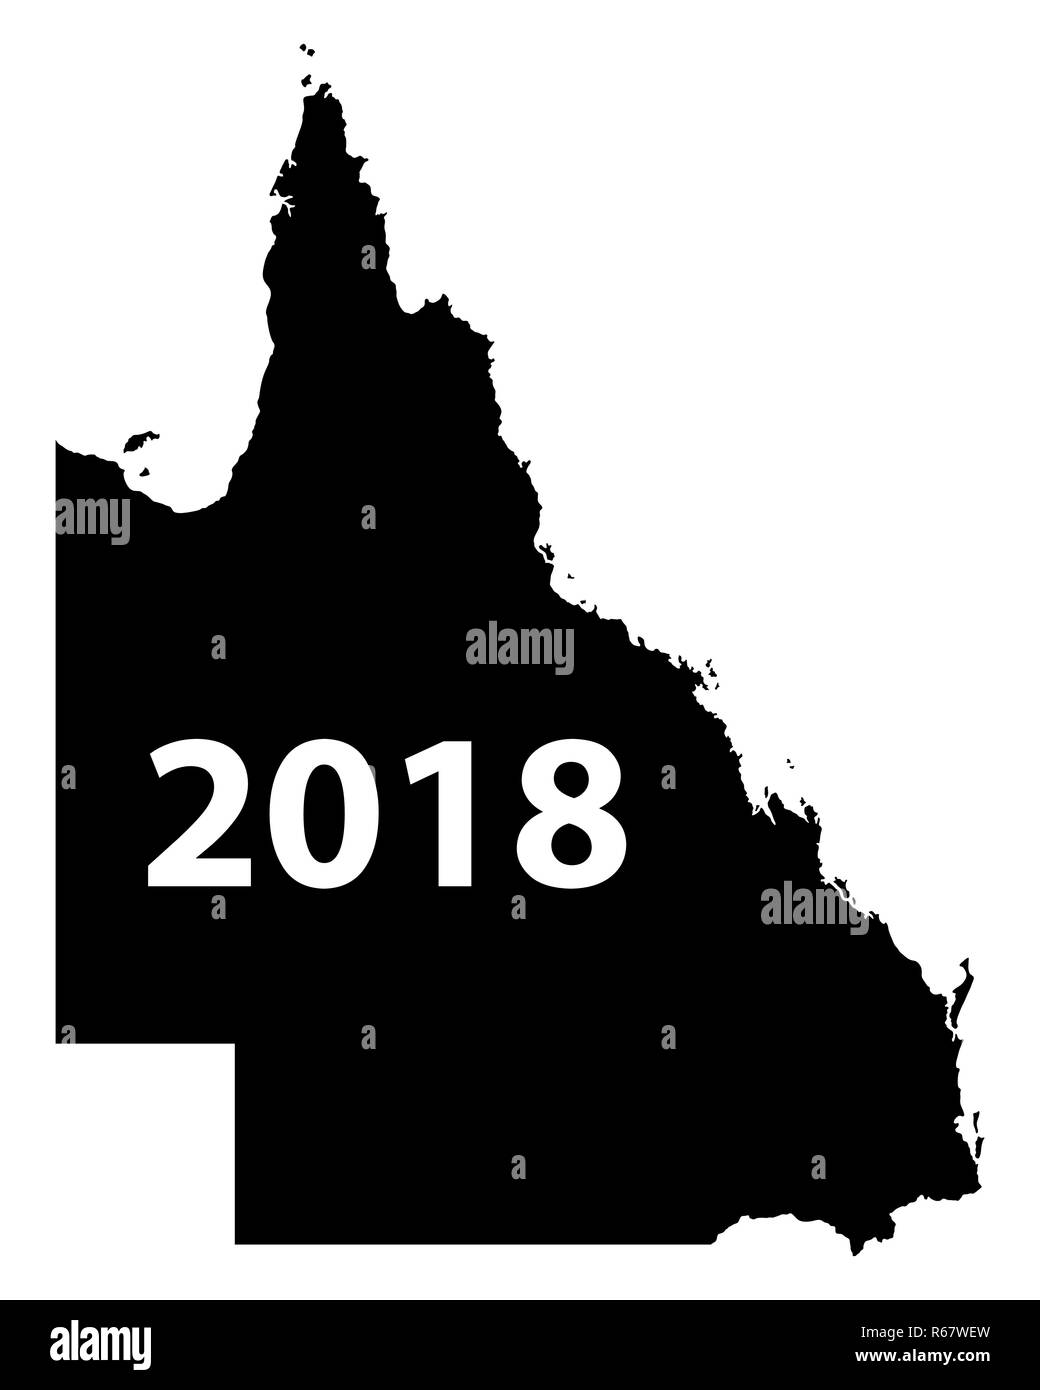 Map Of Queensland 2018 R67WEW 